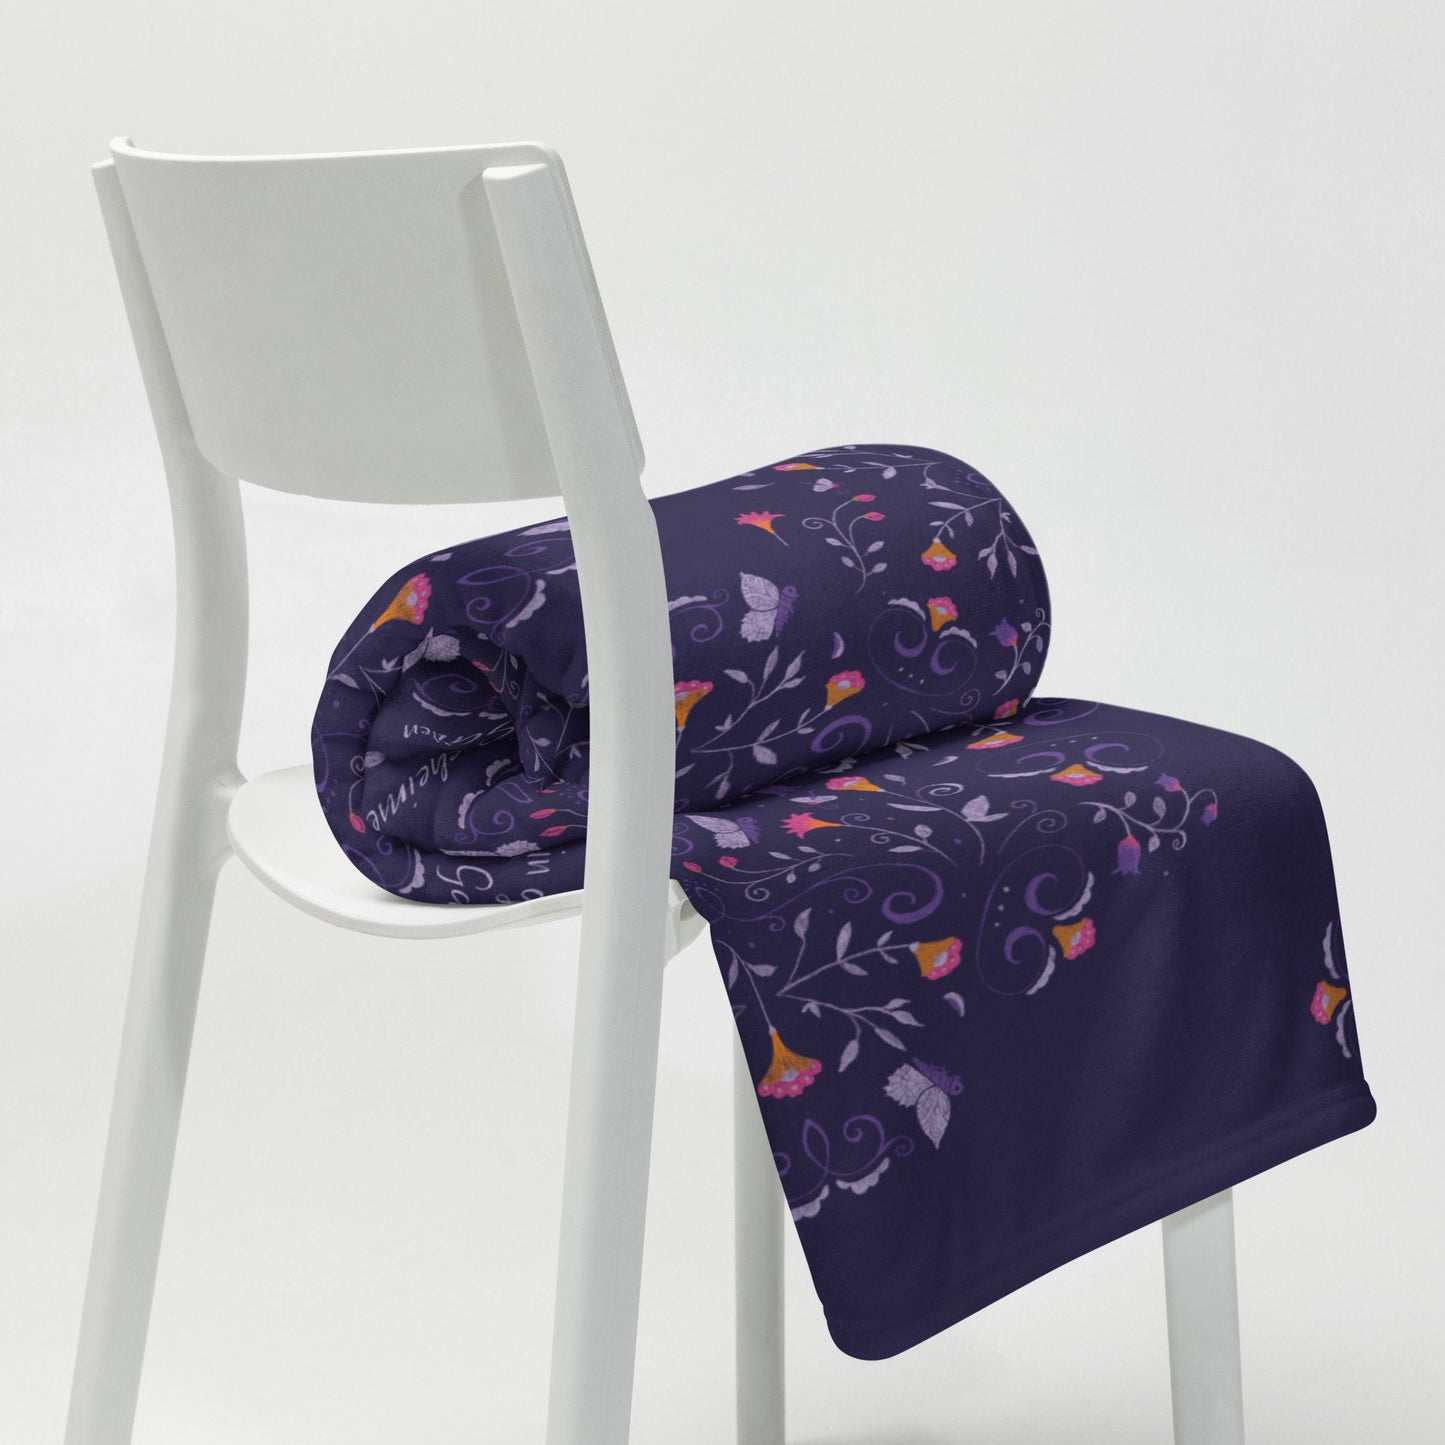 Blanket with flower pattern 'My Secret Garden' 127x153cm